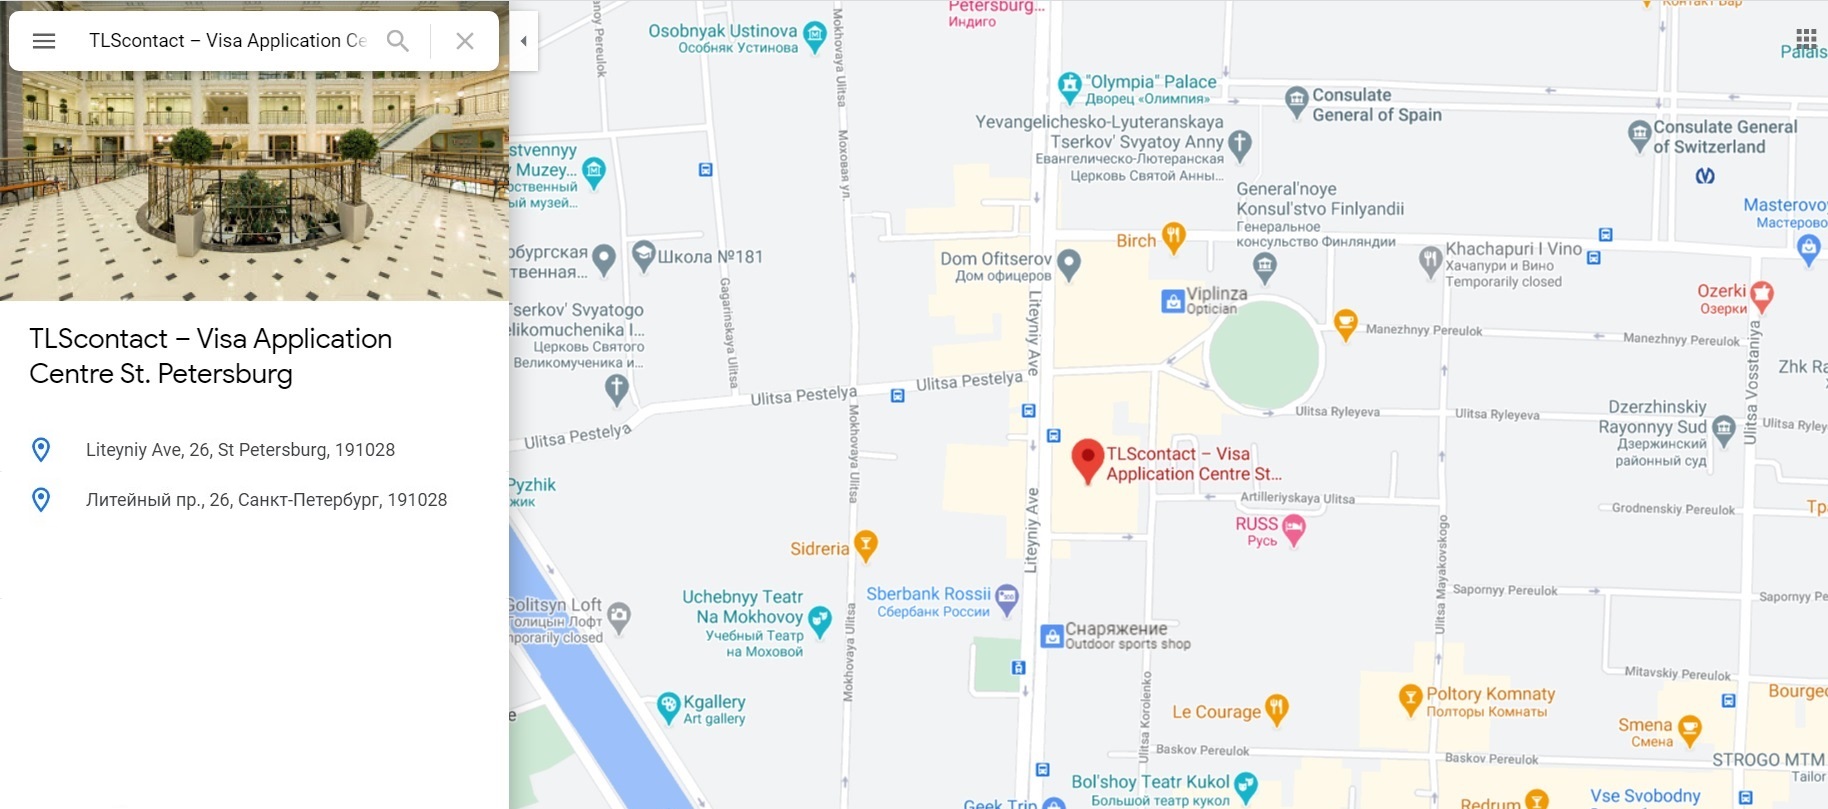 Визовый центр Великобритании в Санкт-Петербурге на карте